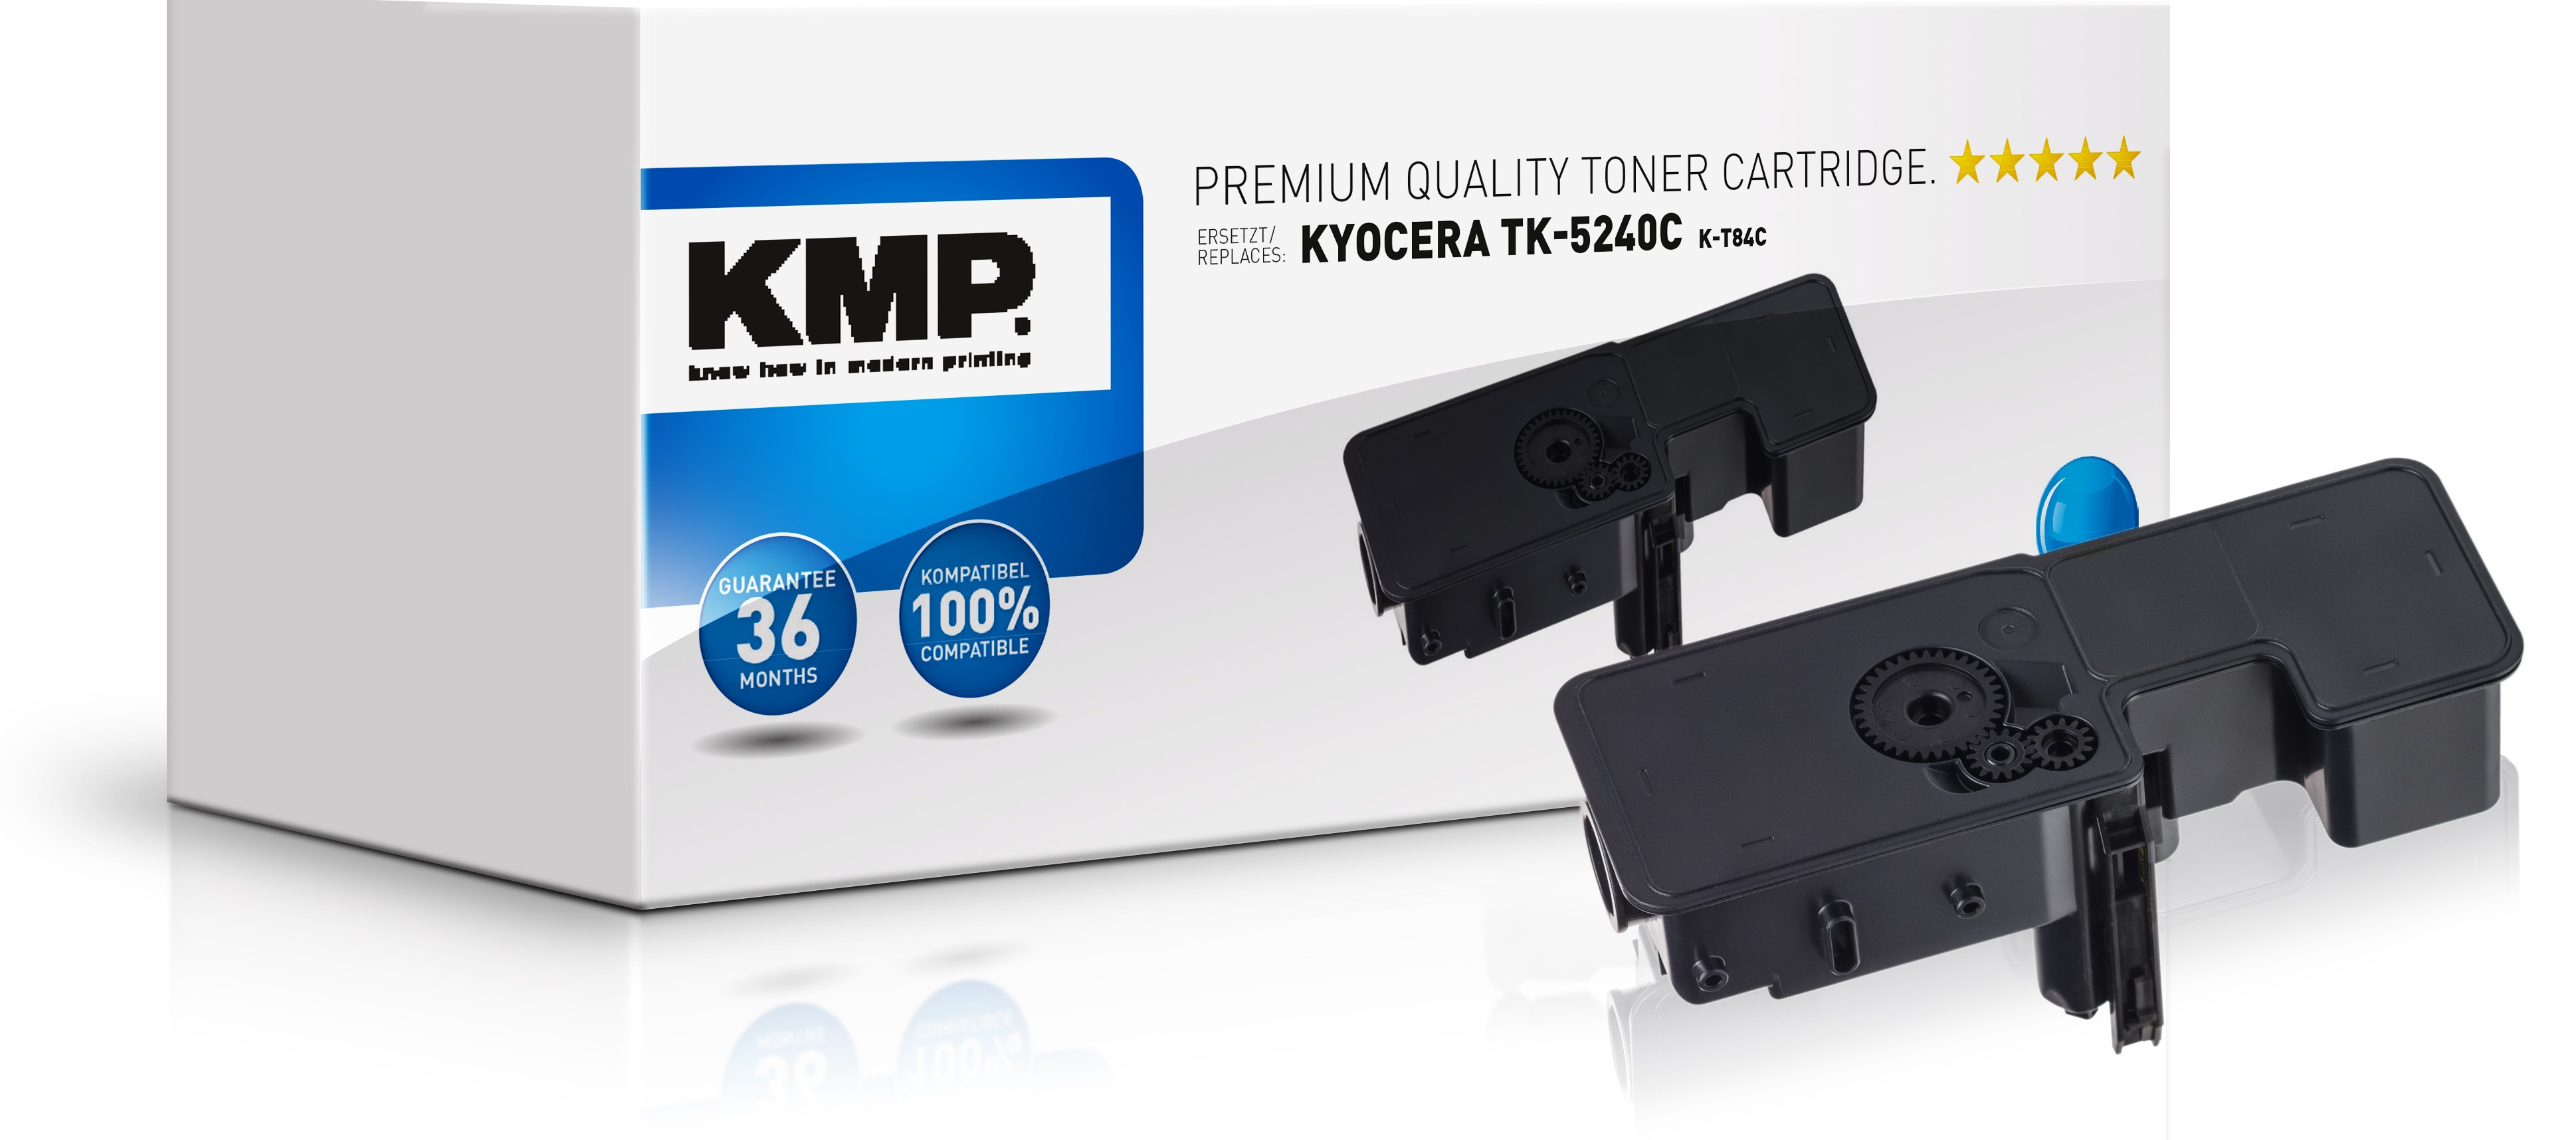 KMP K-T84C - 3000 Seiten - Cyan - 1 Stück(e)